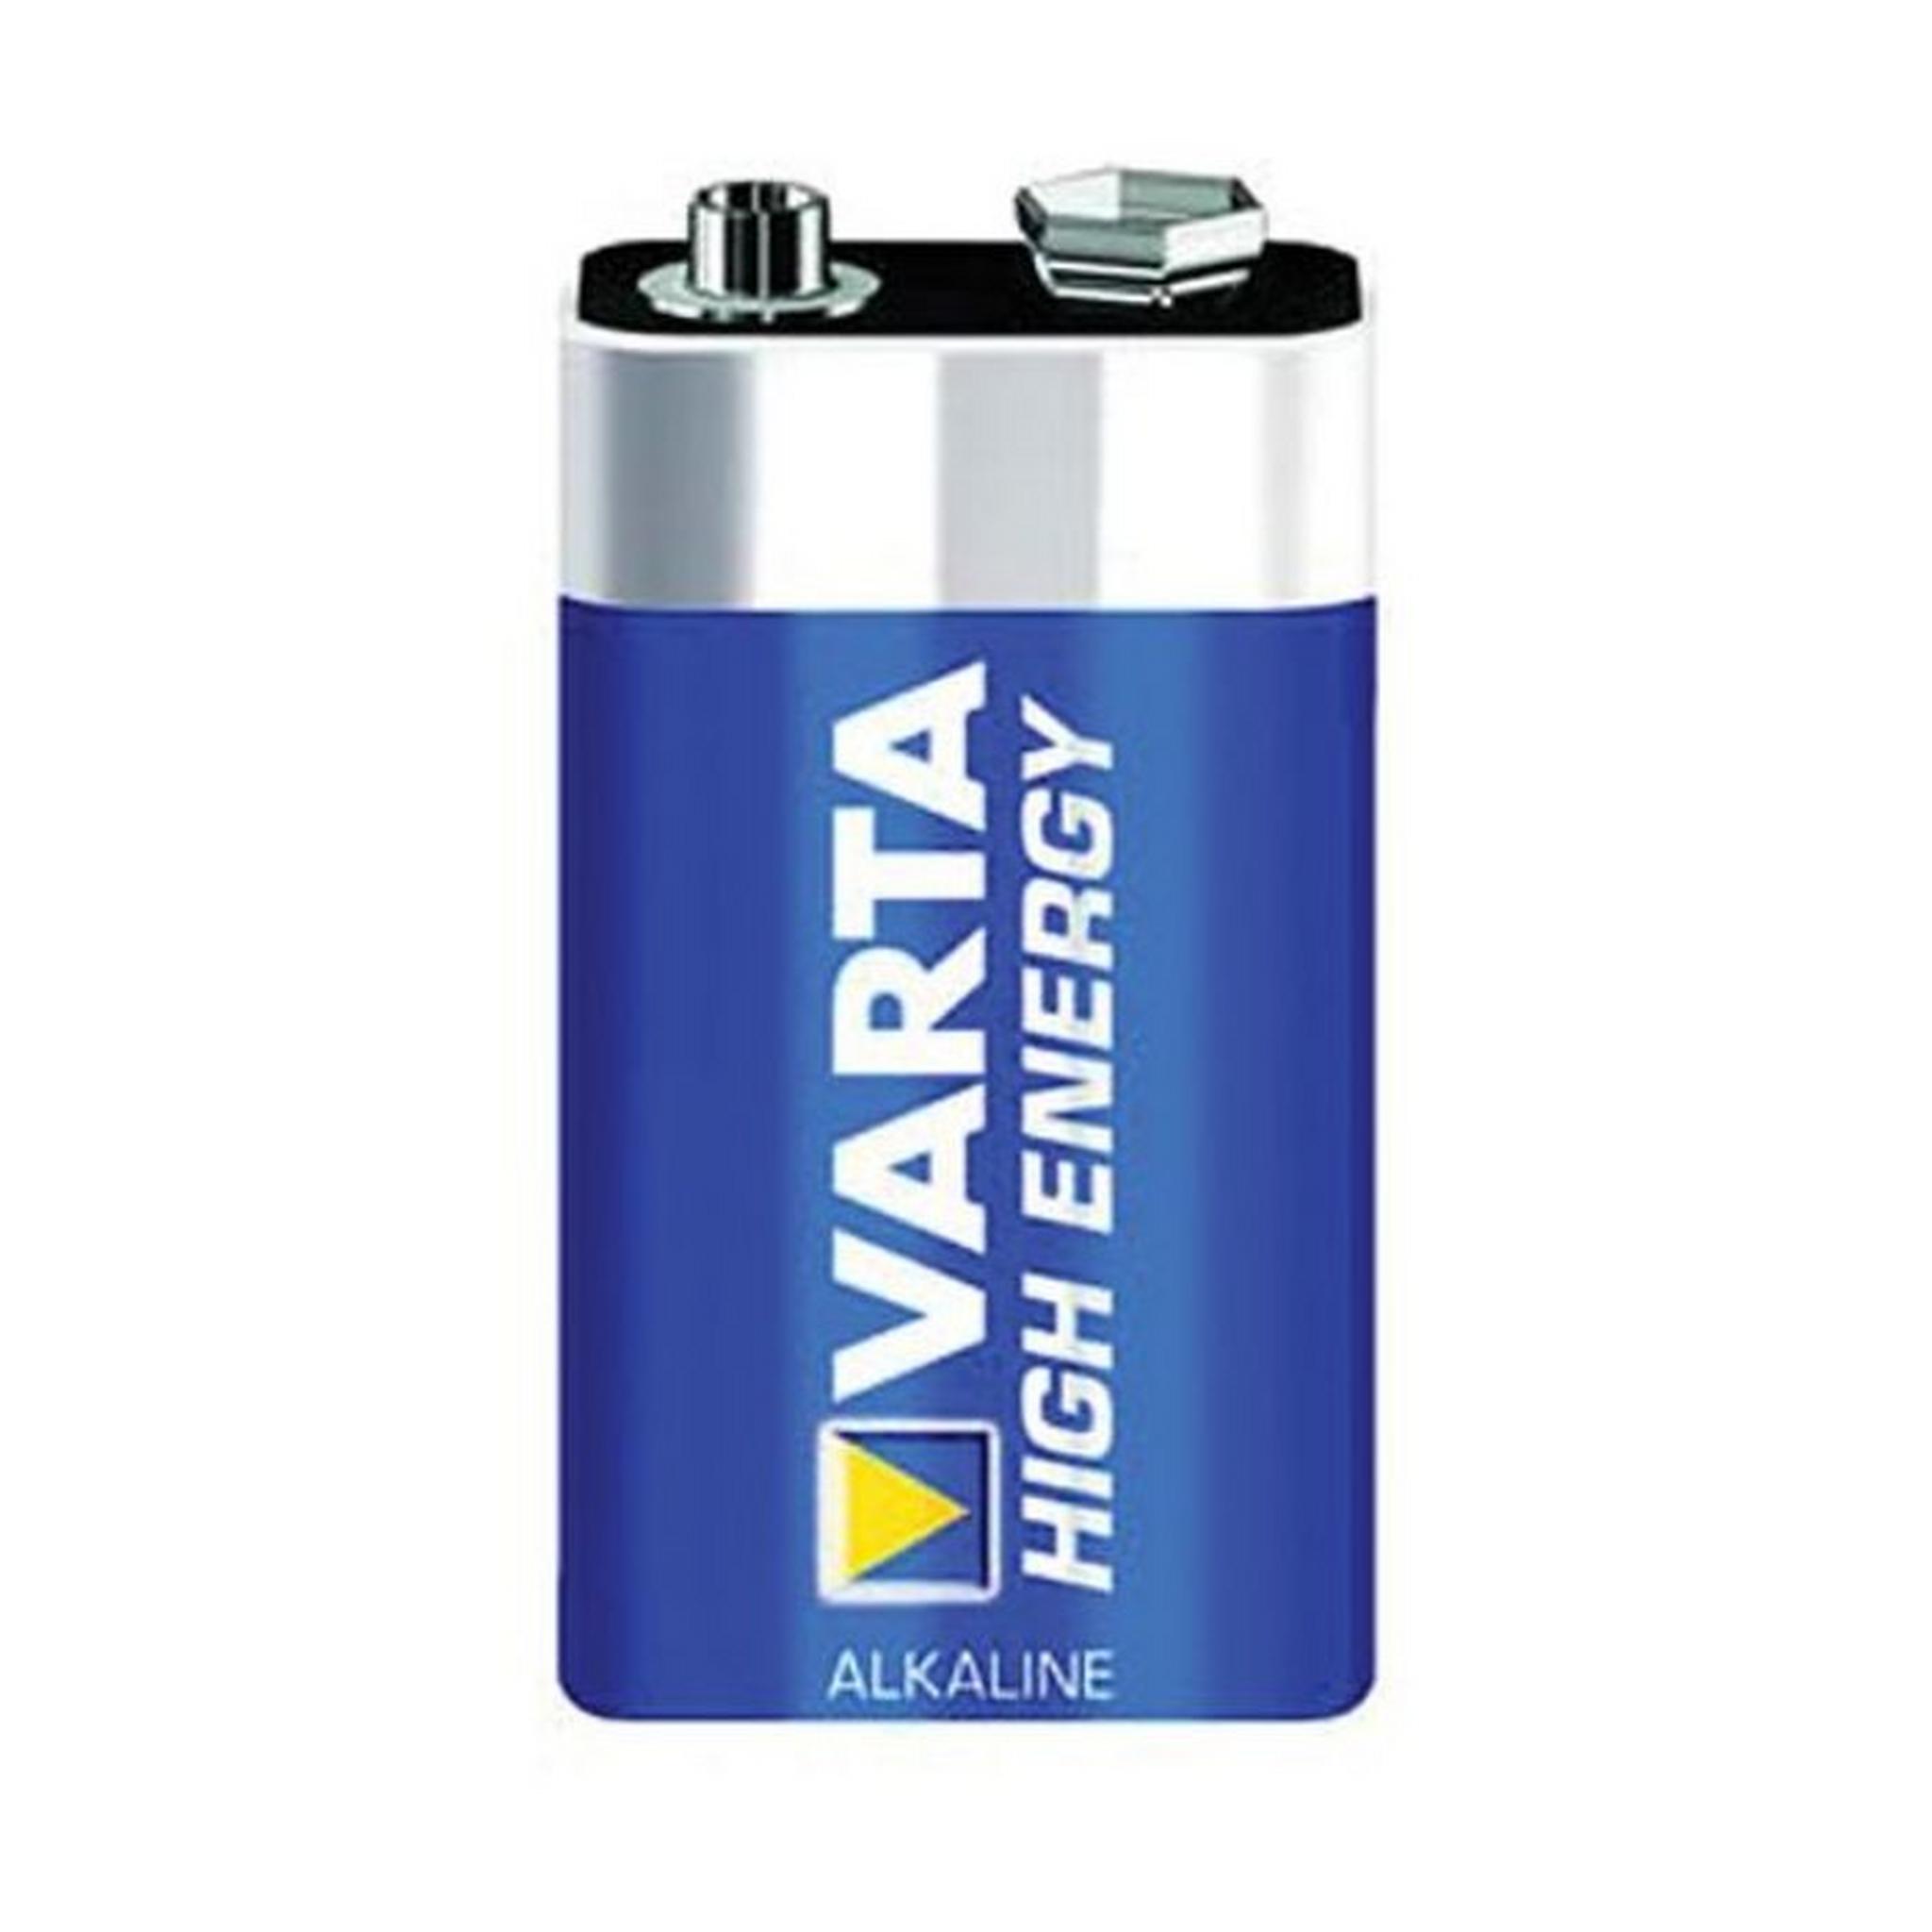 Varta 9V High Energy Alkaline Battery, 4922121411 – Blue